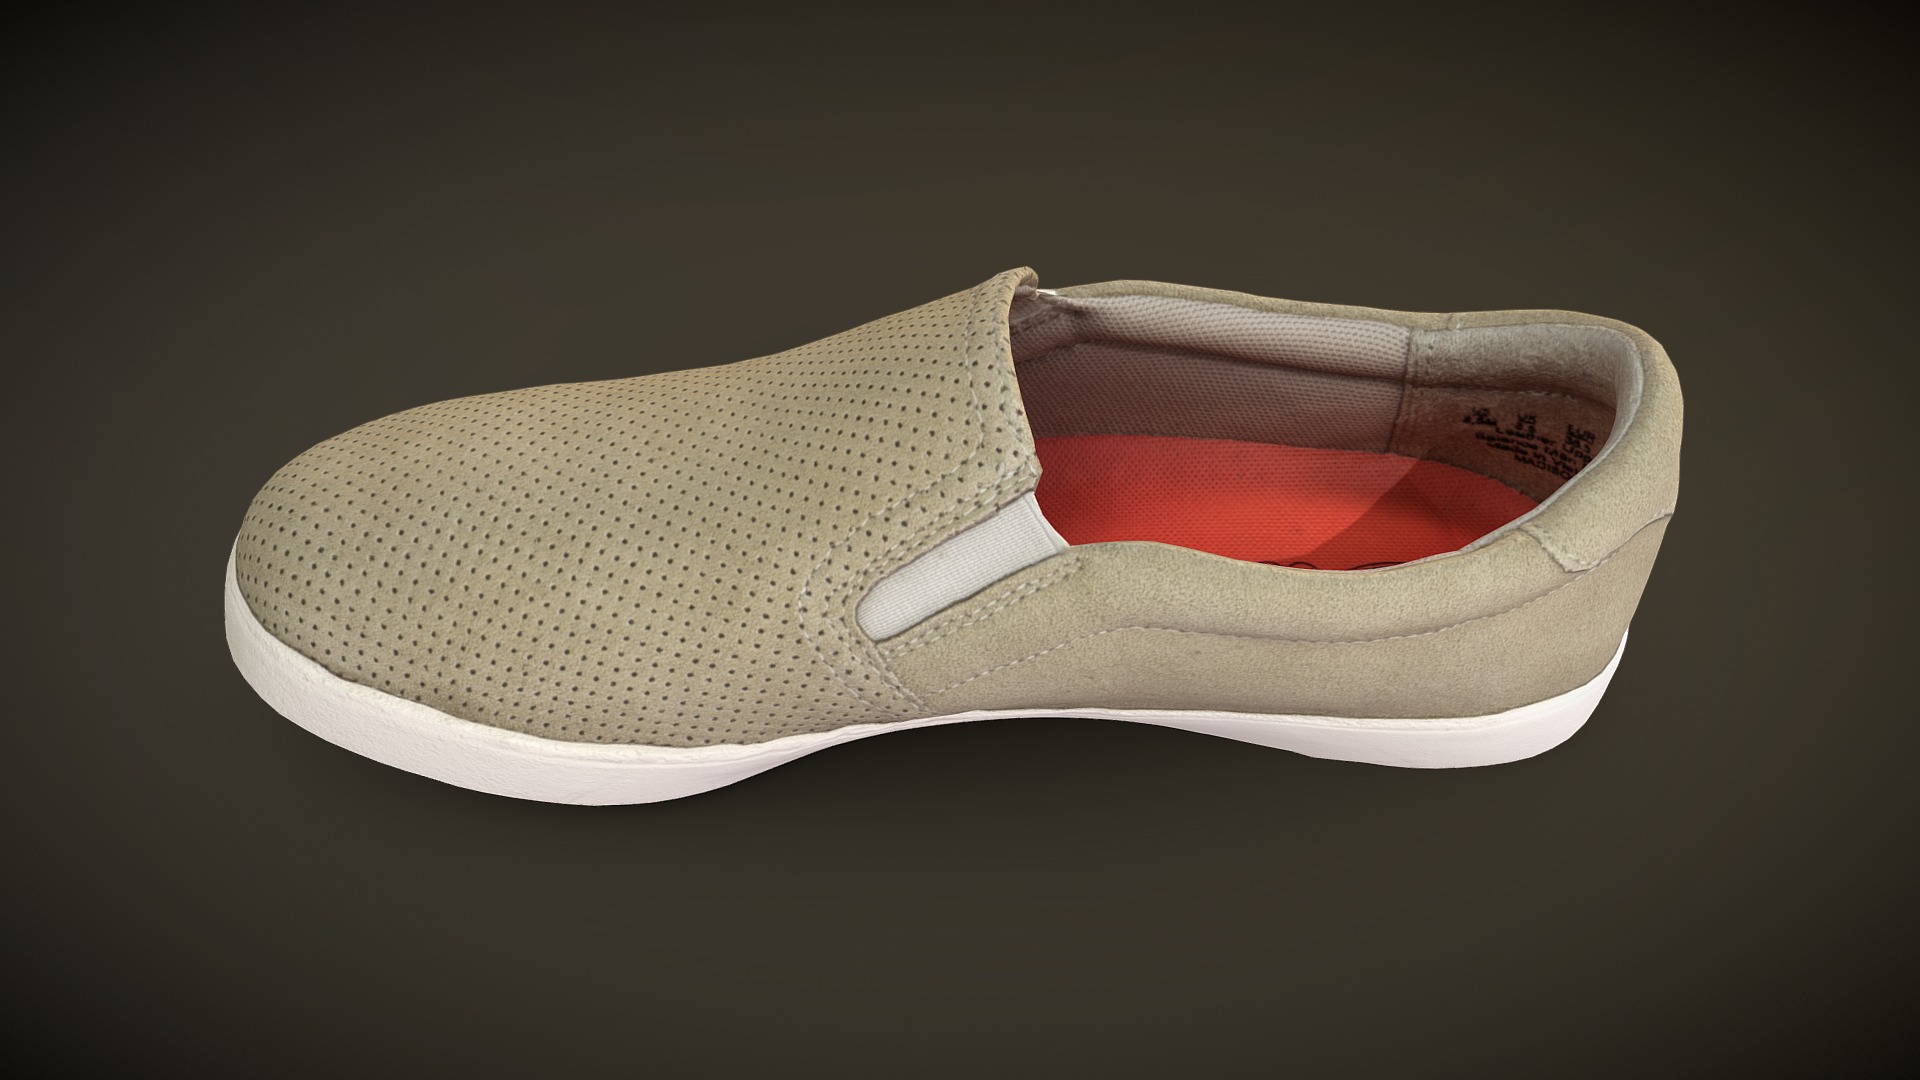 3D model Dr. Scholl’s Madison Slip-On Sneaker - This is a 3D model of the Dr. Scholl's Madison Slip-On Sneaker. The 3D model is about a white and brown shoe.